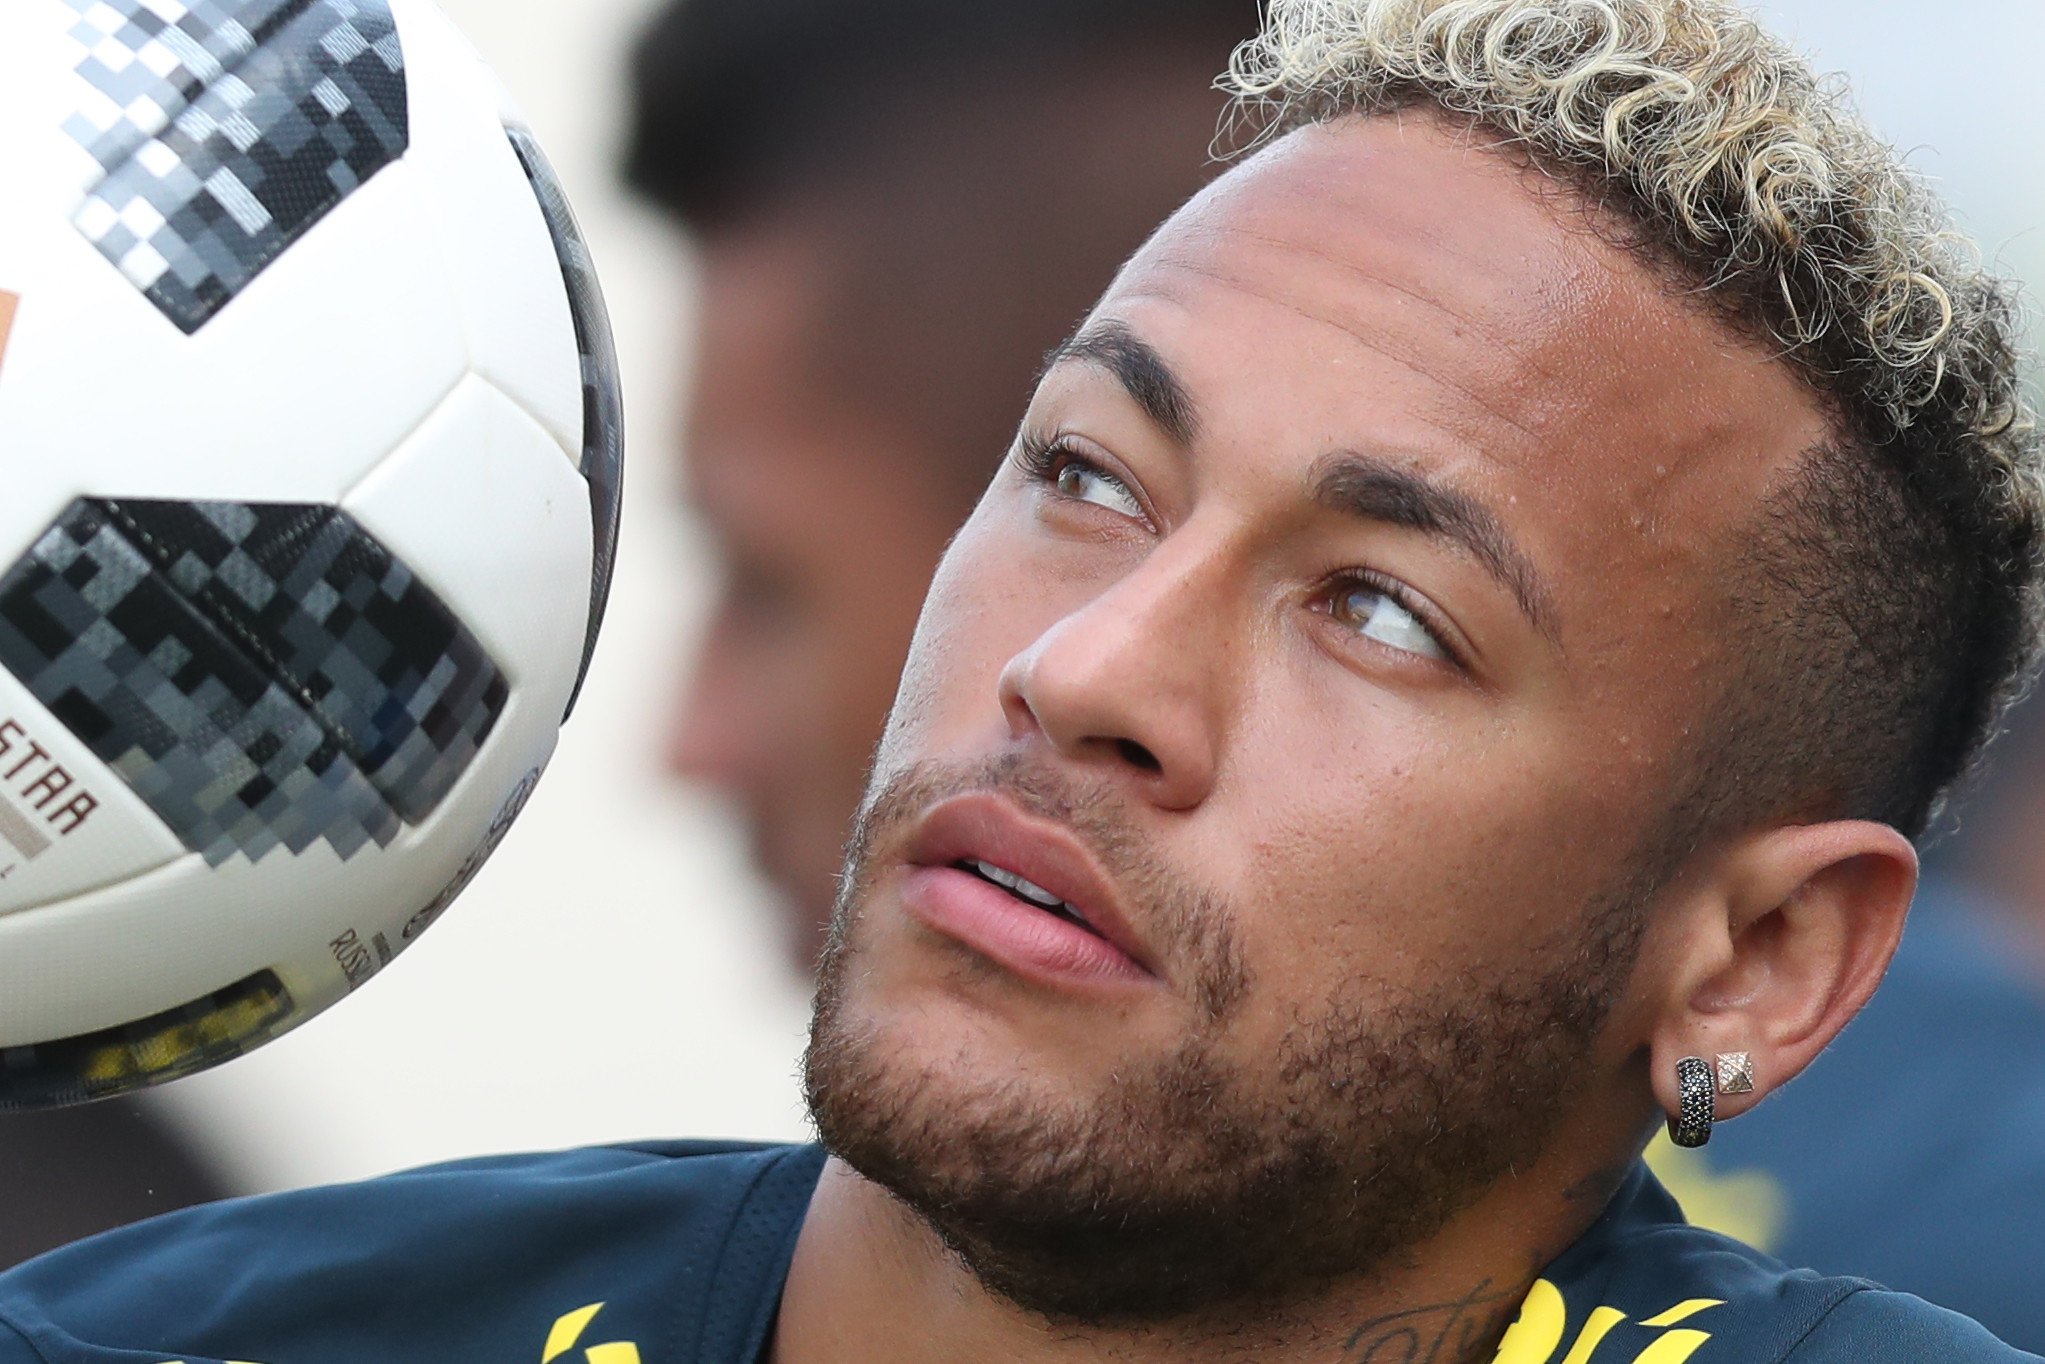 Mi casa, su casa: Neymar leva Seleção ao Parque dos Príncipes em